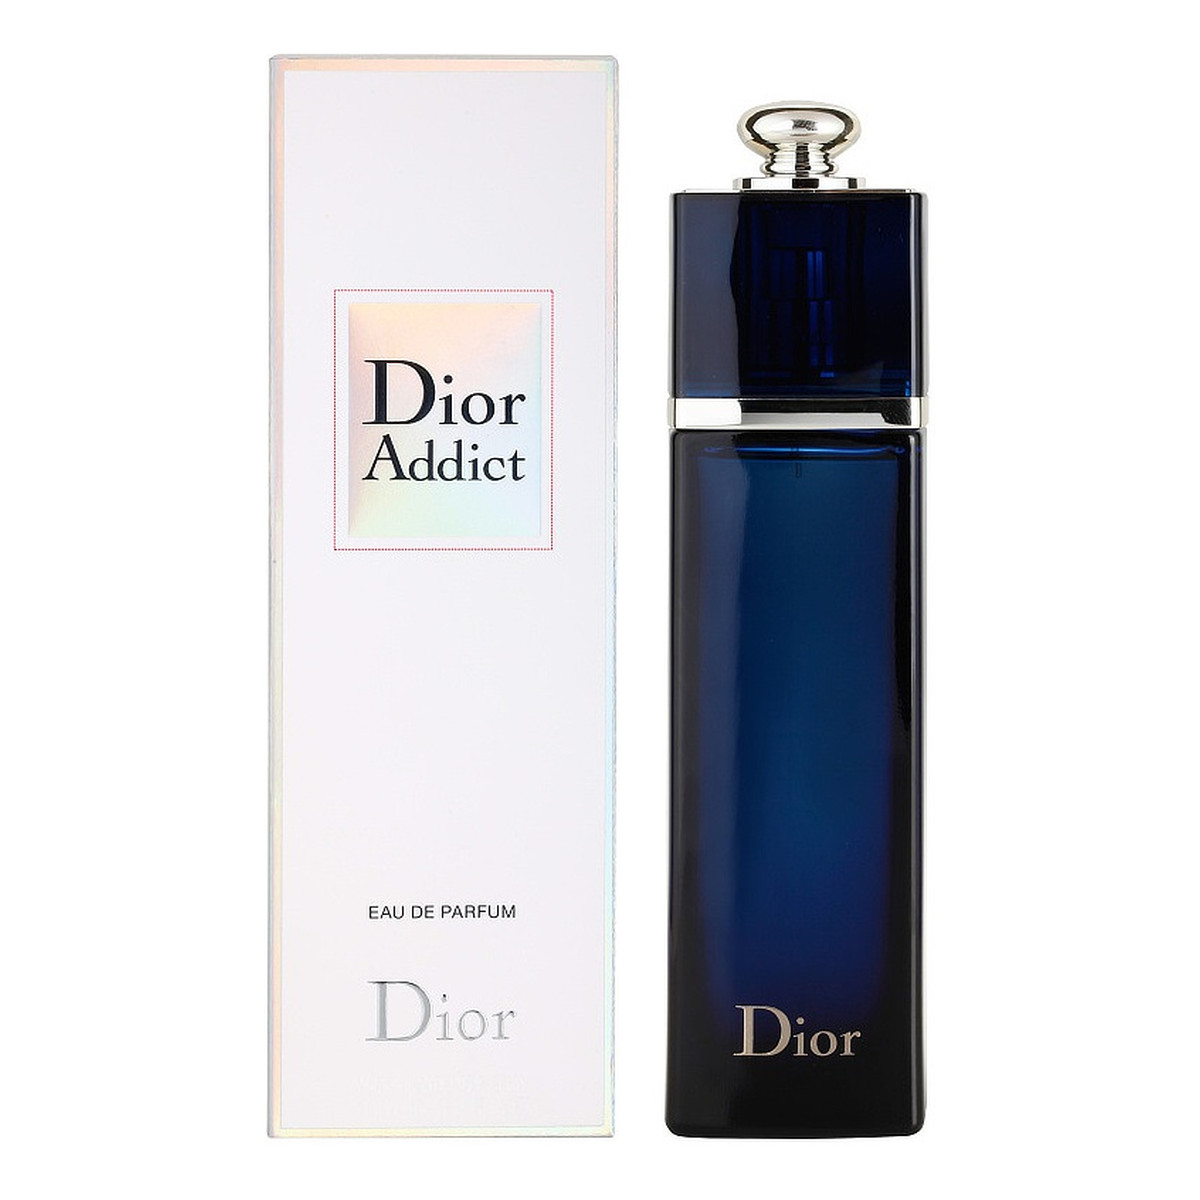 Dior Addict woda perfumowana dla kobiet 100ml